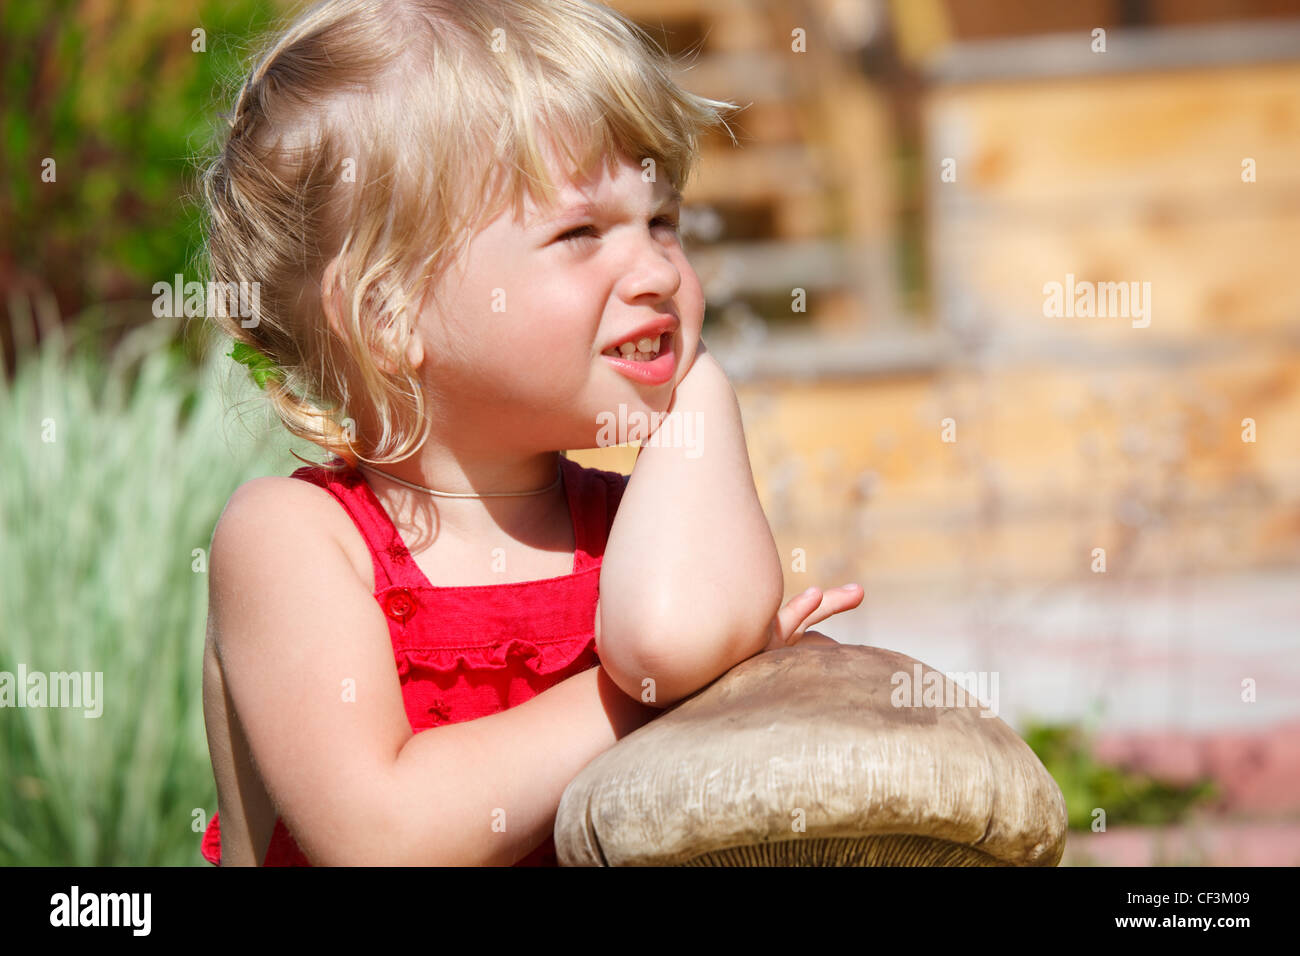 Portrait de petite fille sur la pelouse ensoleillée le jour Banque D'Images